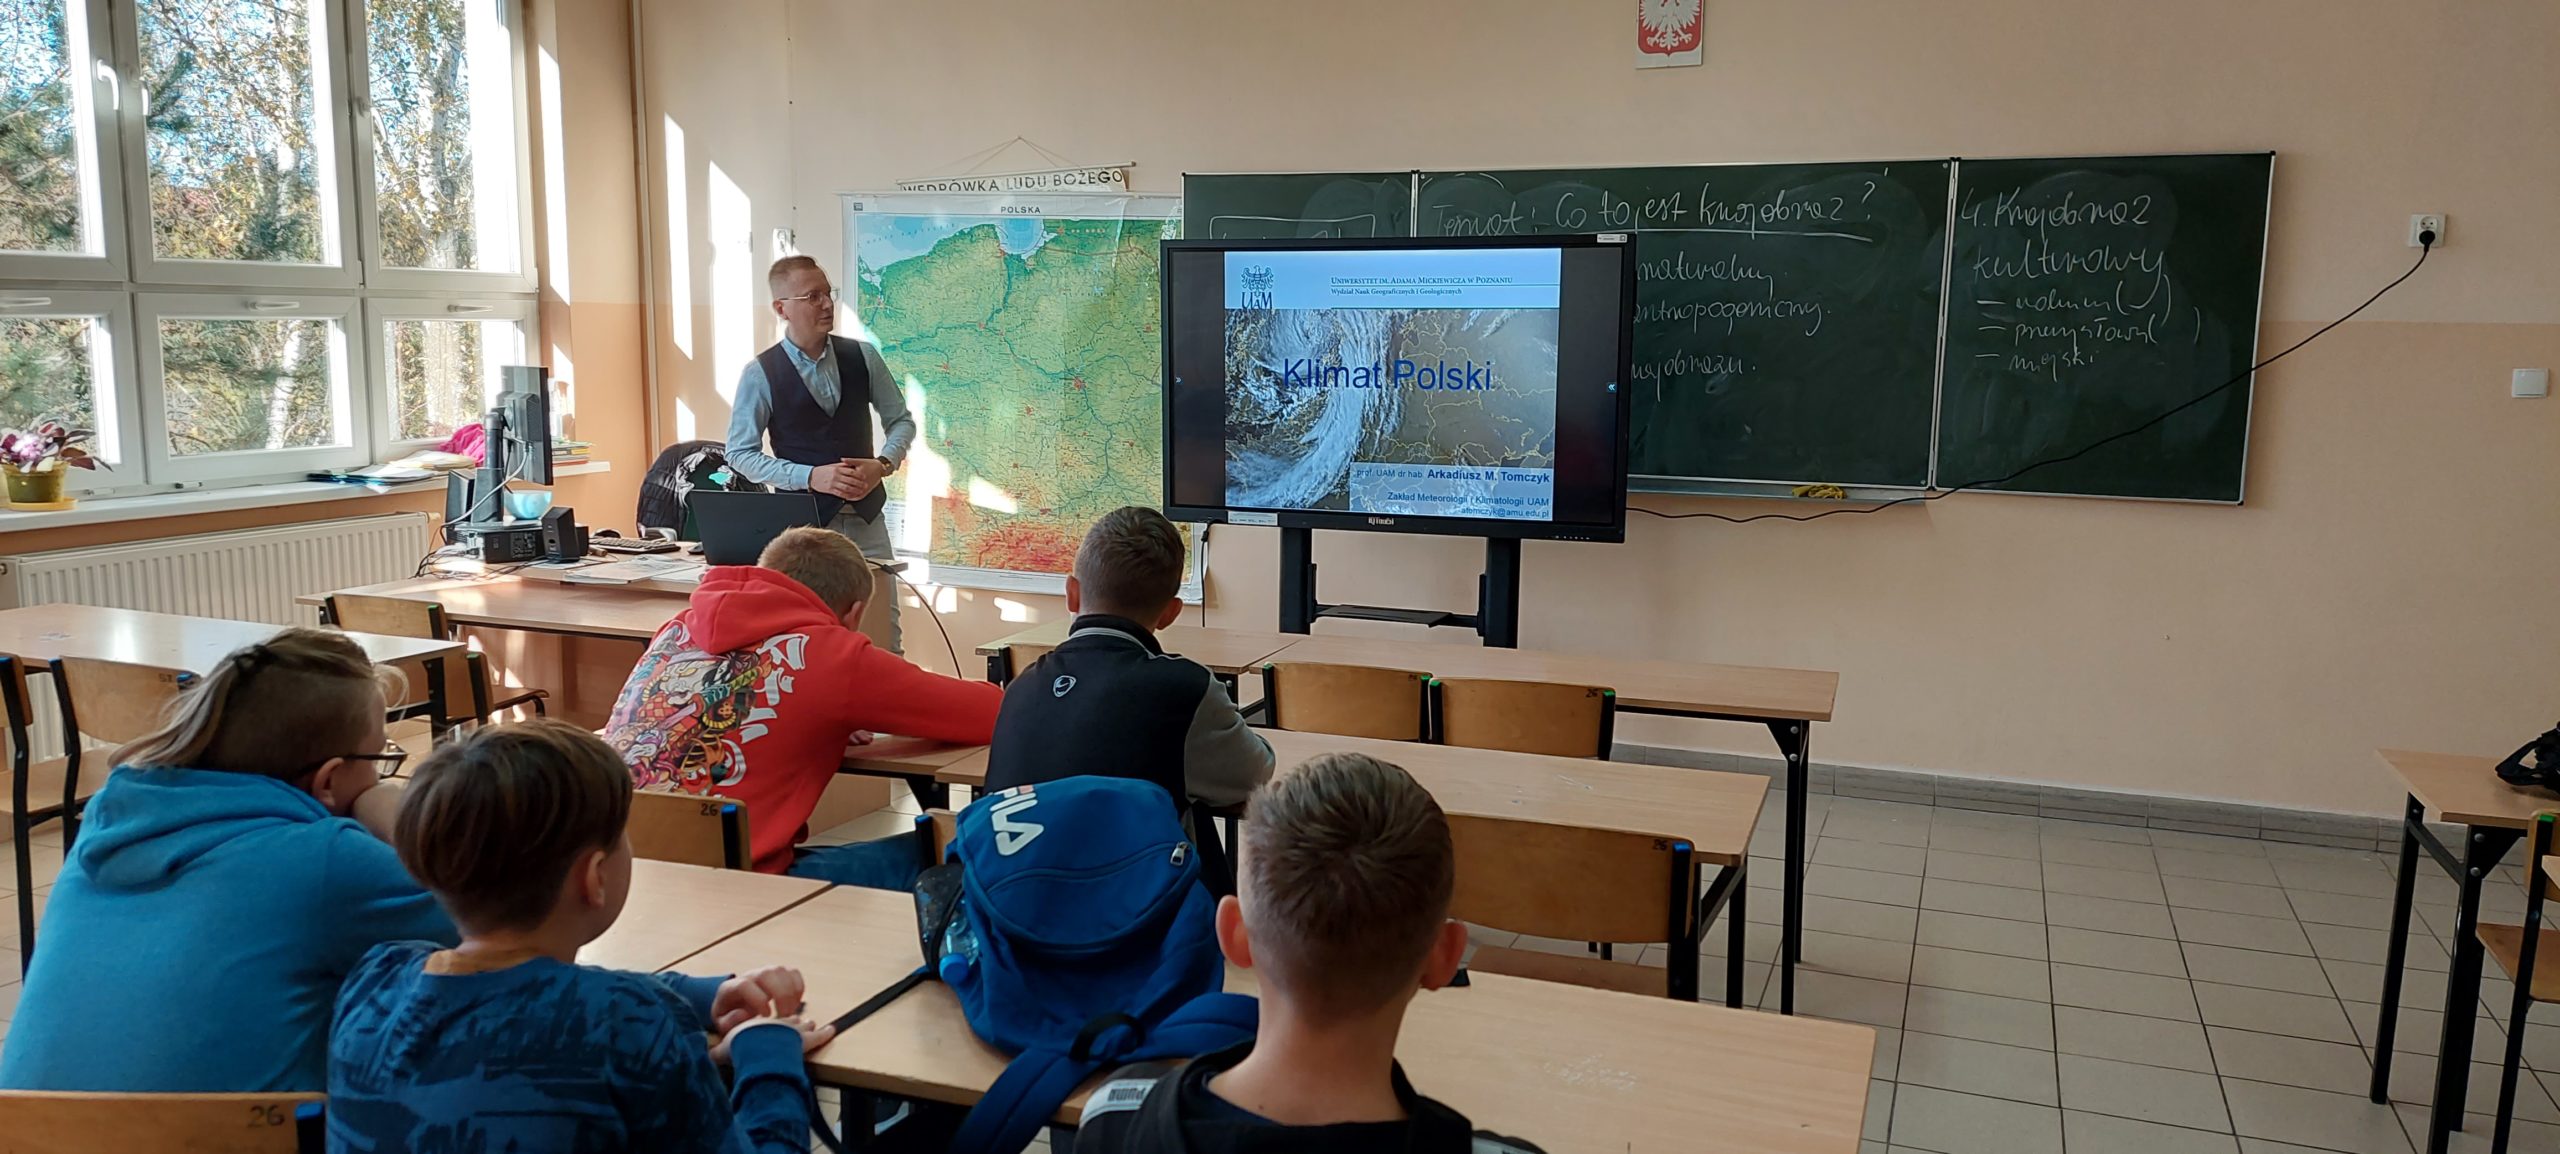 O klimacie Polski… czyli lekcja geografii dla klas siódmych